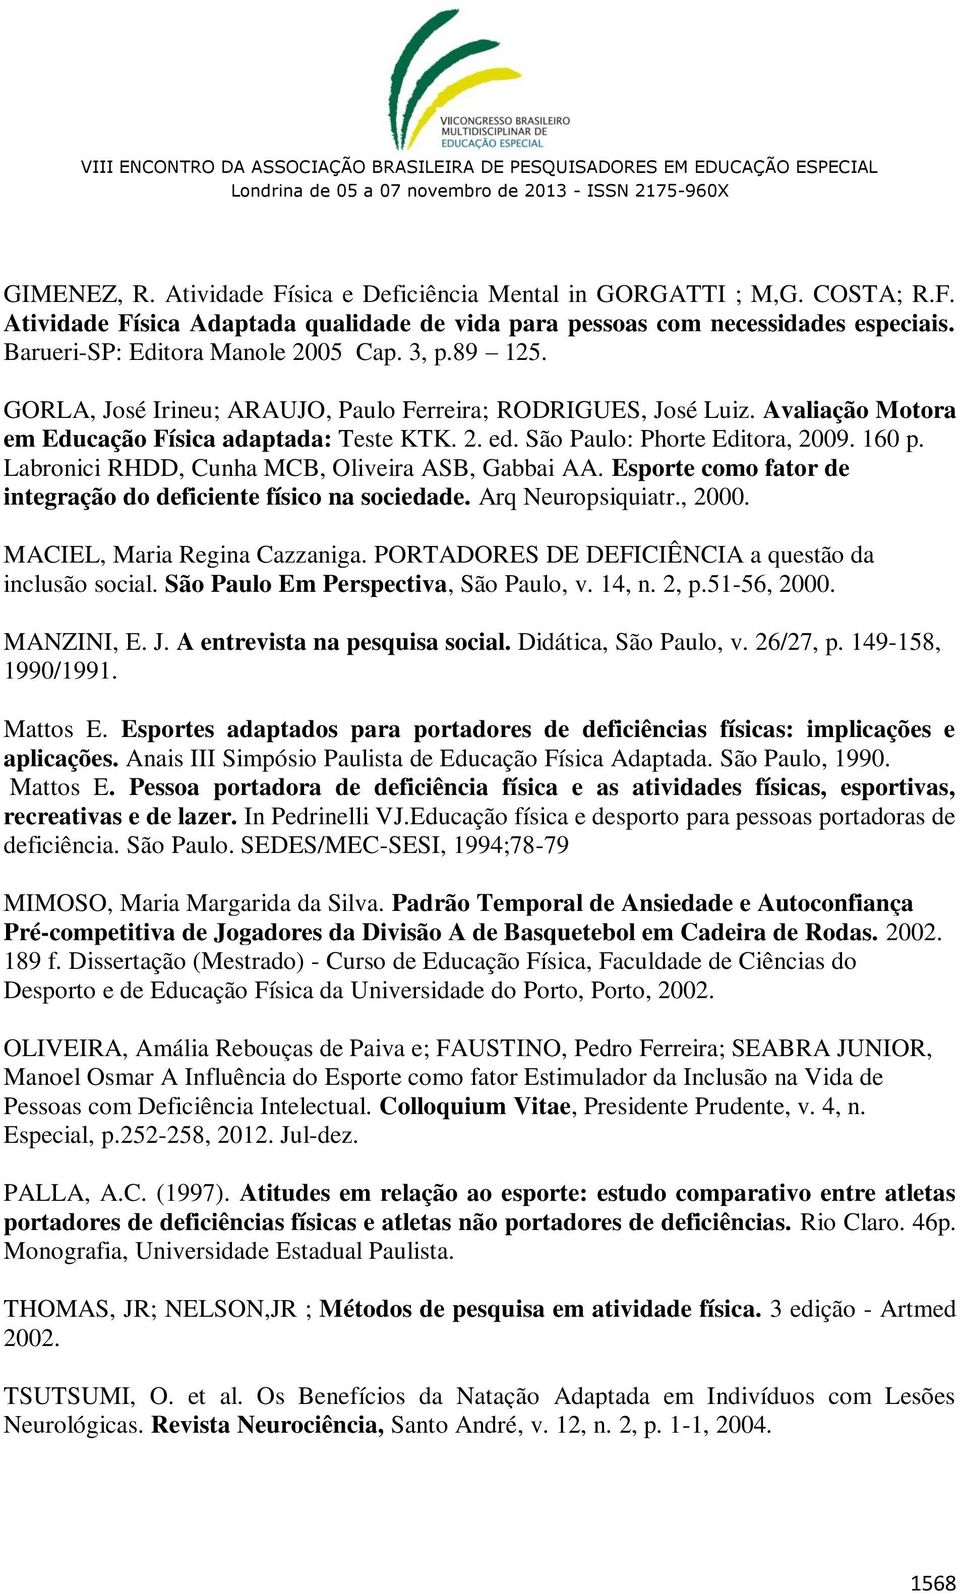 São Paulo: Phorte Editora, 2009. 160 p. Labronici RHDD, Cunha MCB, Oliveira ASB, Gabbai AA. Esporte como fator de integração do deficiente físico na sociedade. Arq Neuropsiquiatr., 2000.